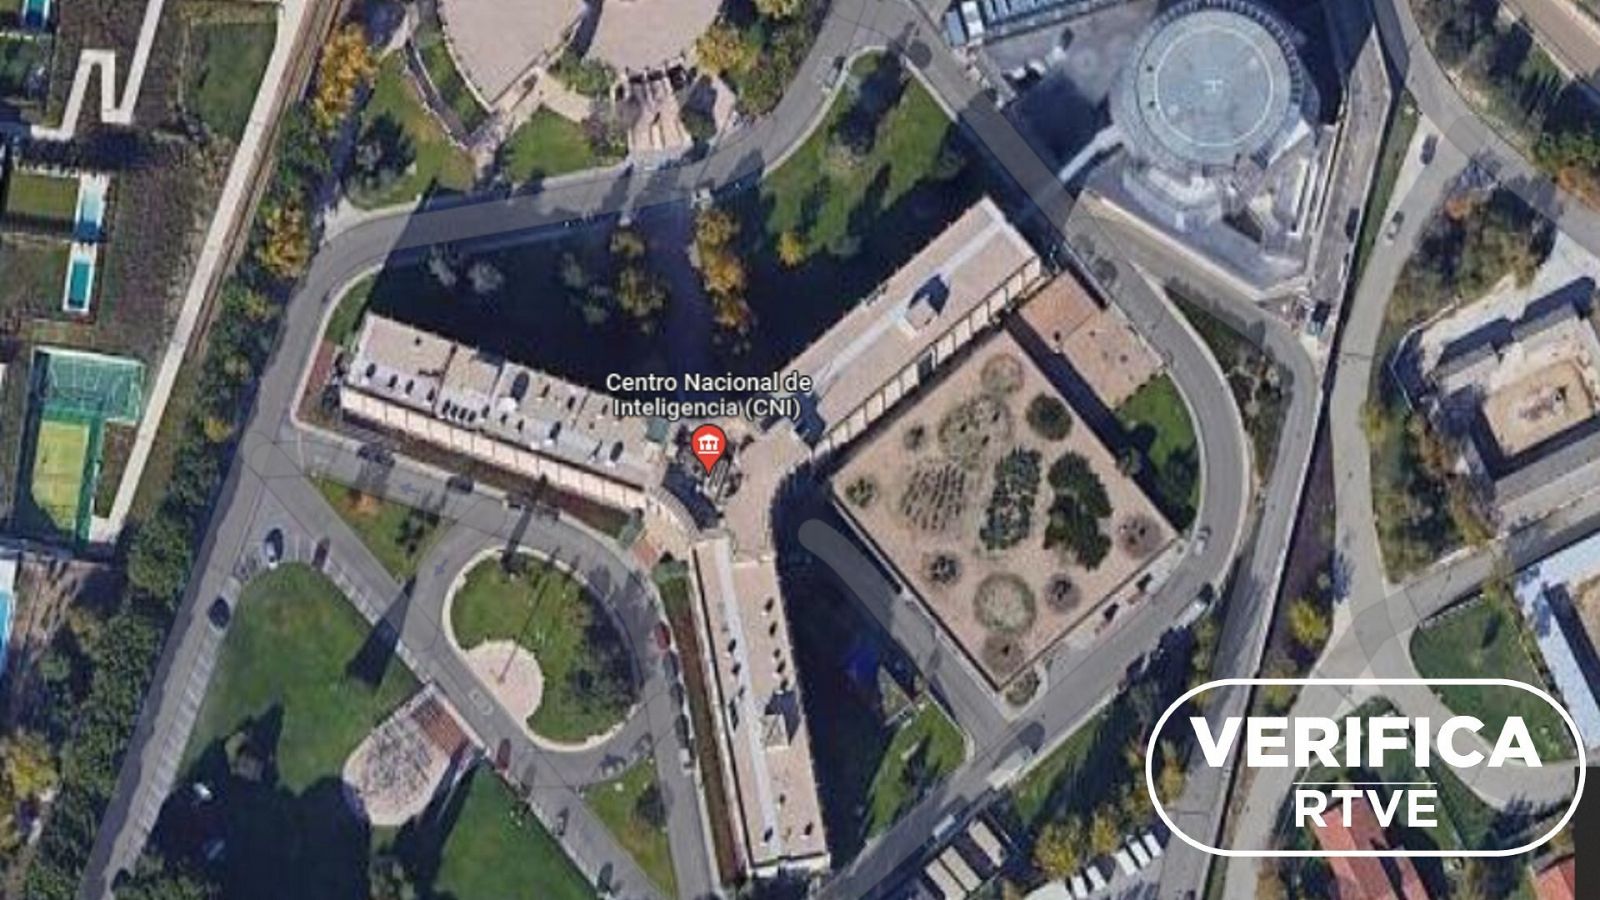 La sede del Centro Nacional de Inteligencia (CNI) en una imagen de Google Maps, con el sello blanco de VerificaRTVE